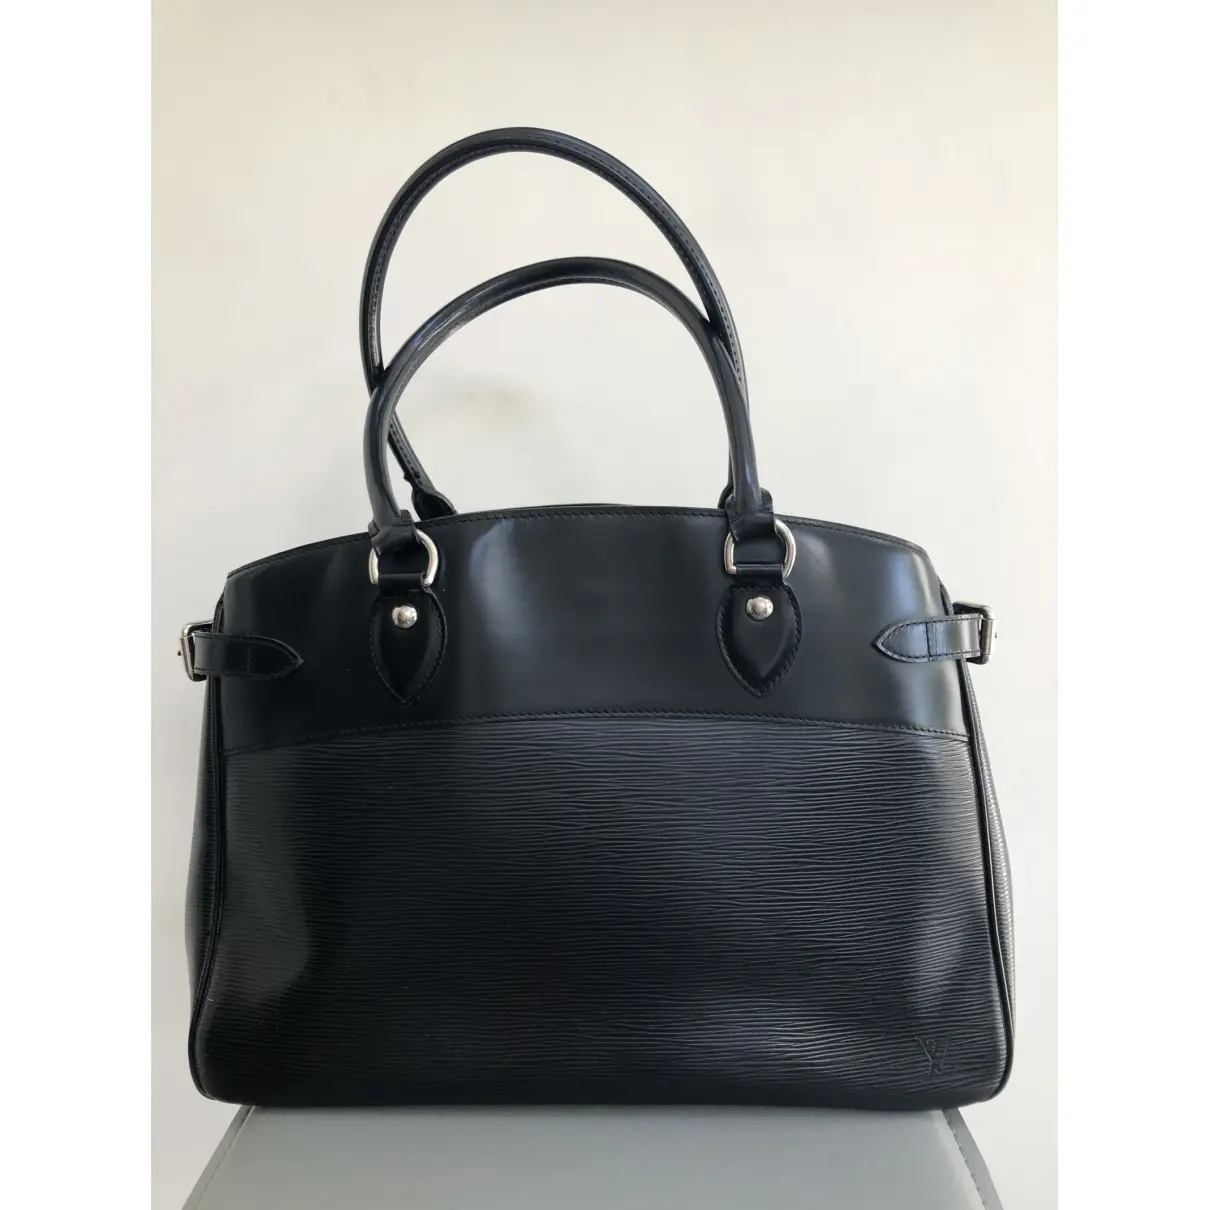 Louis Vuitton Bréa leather handbag for sale